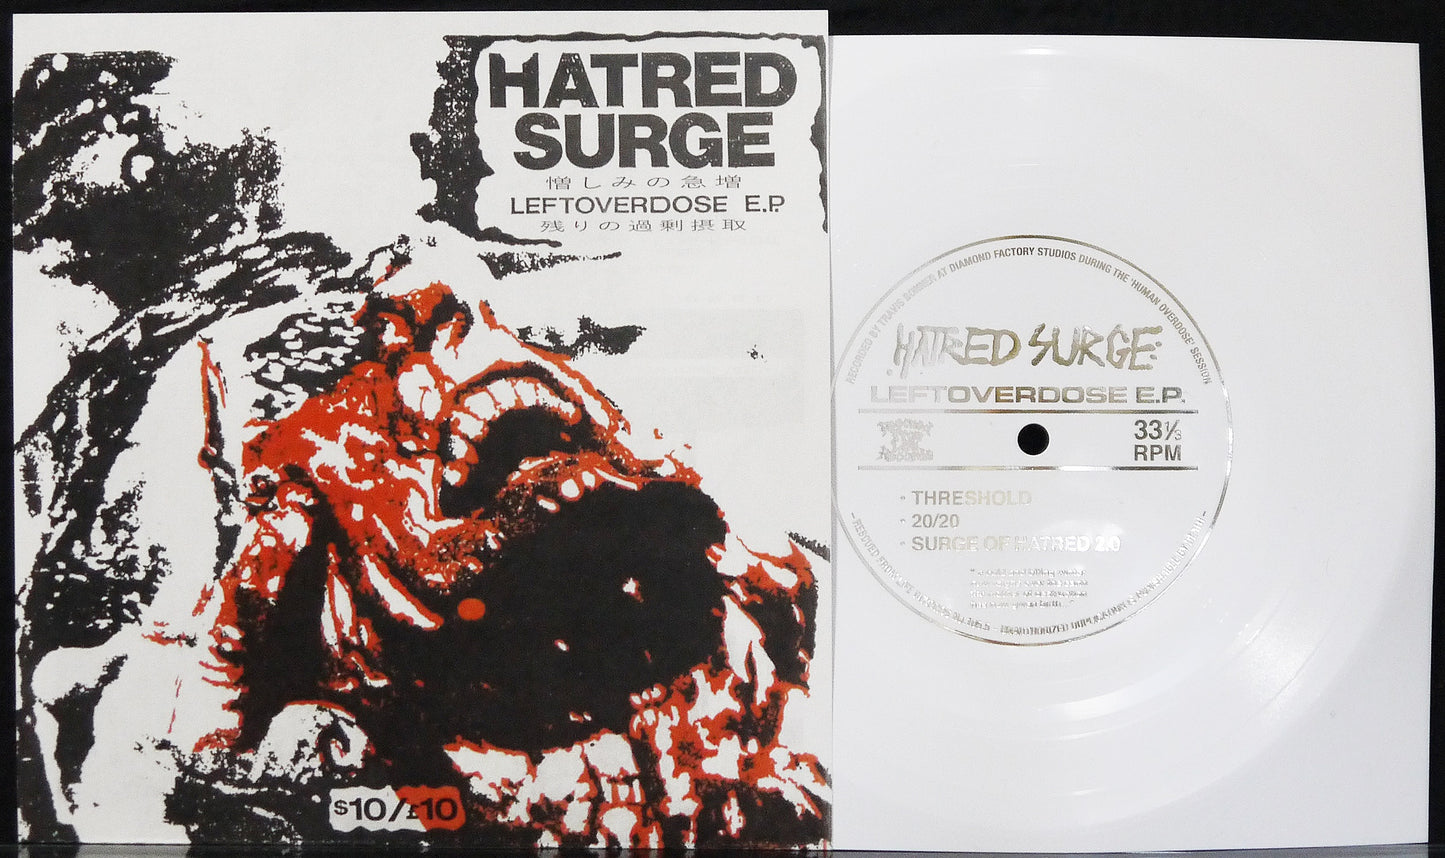 HATRED SURGE - Leftoverdose E.P. 7"Flexi